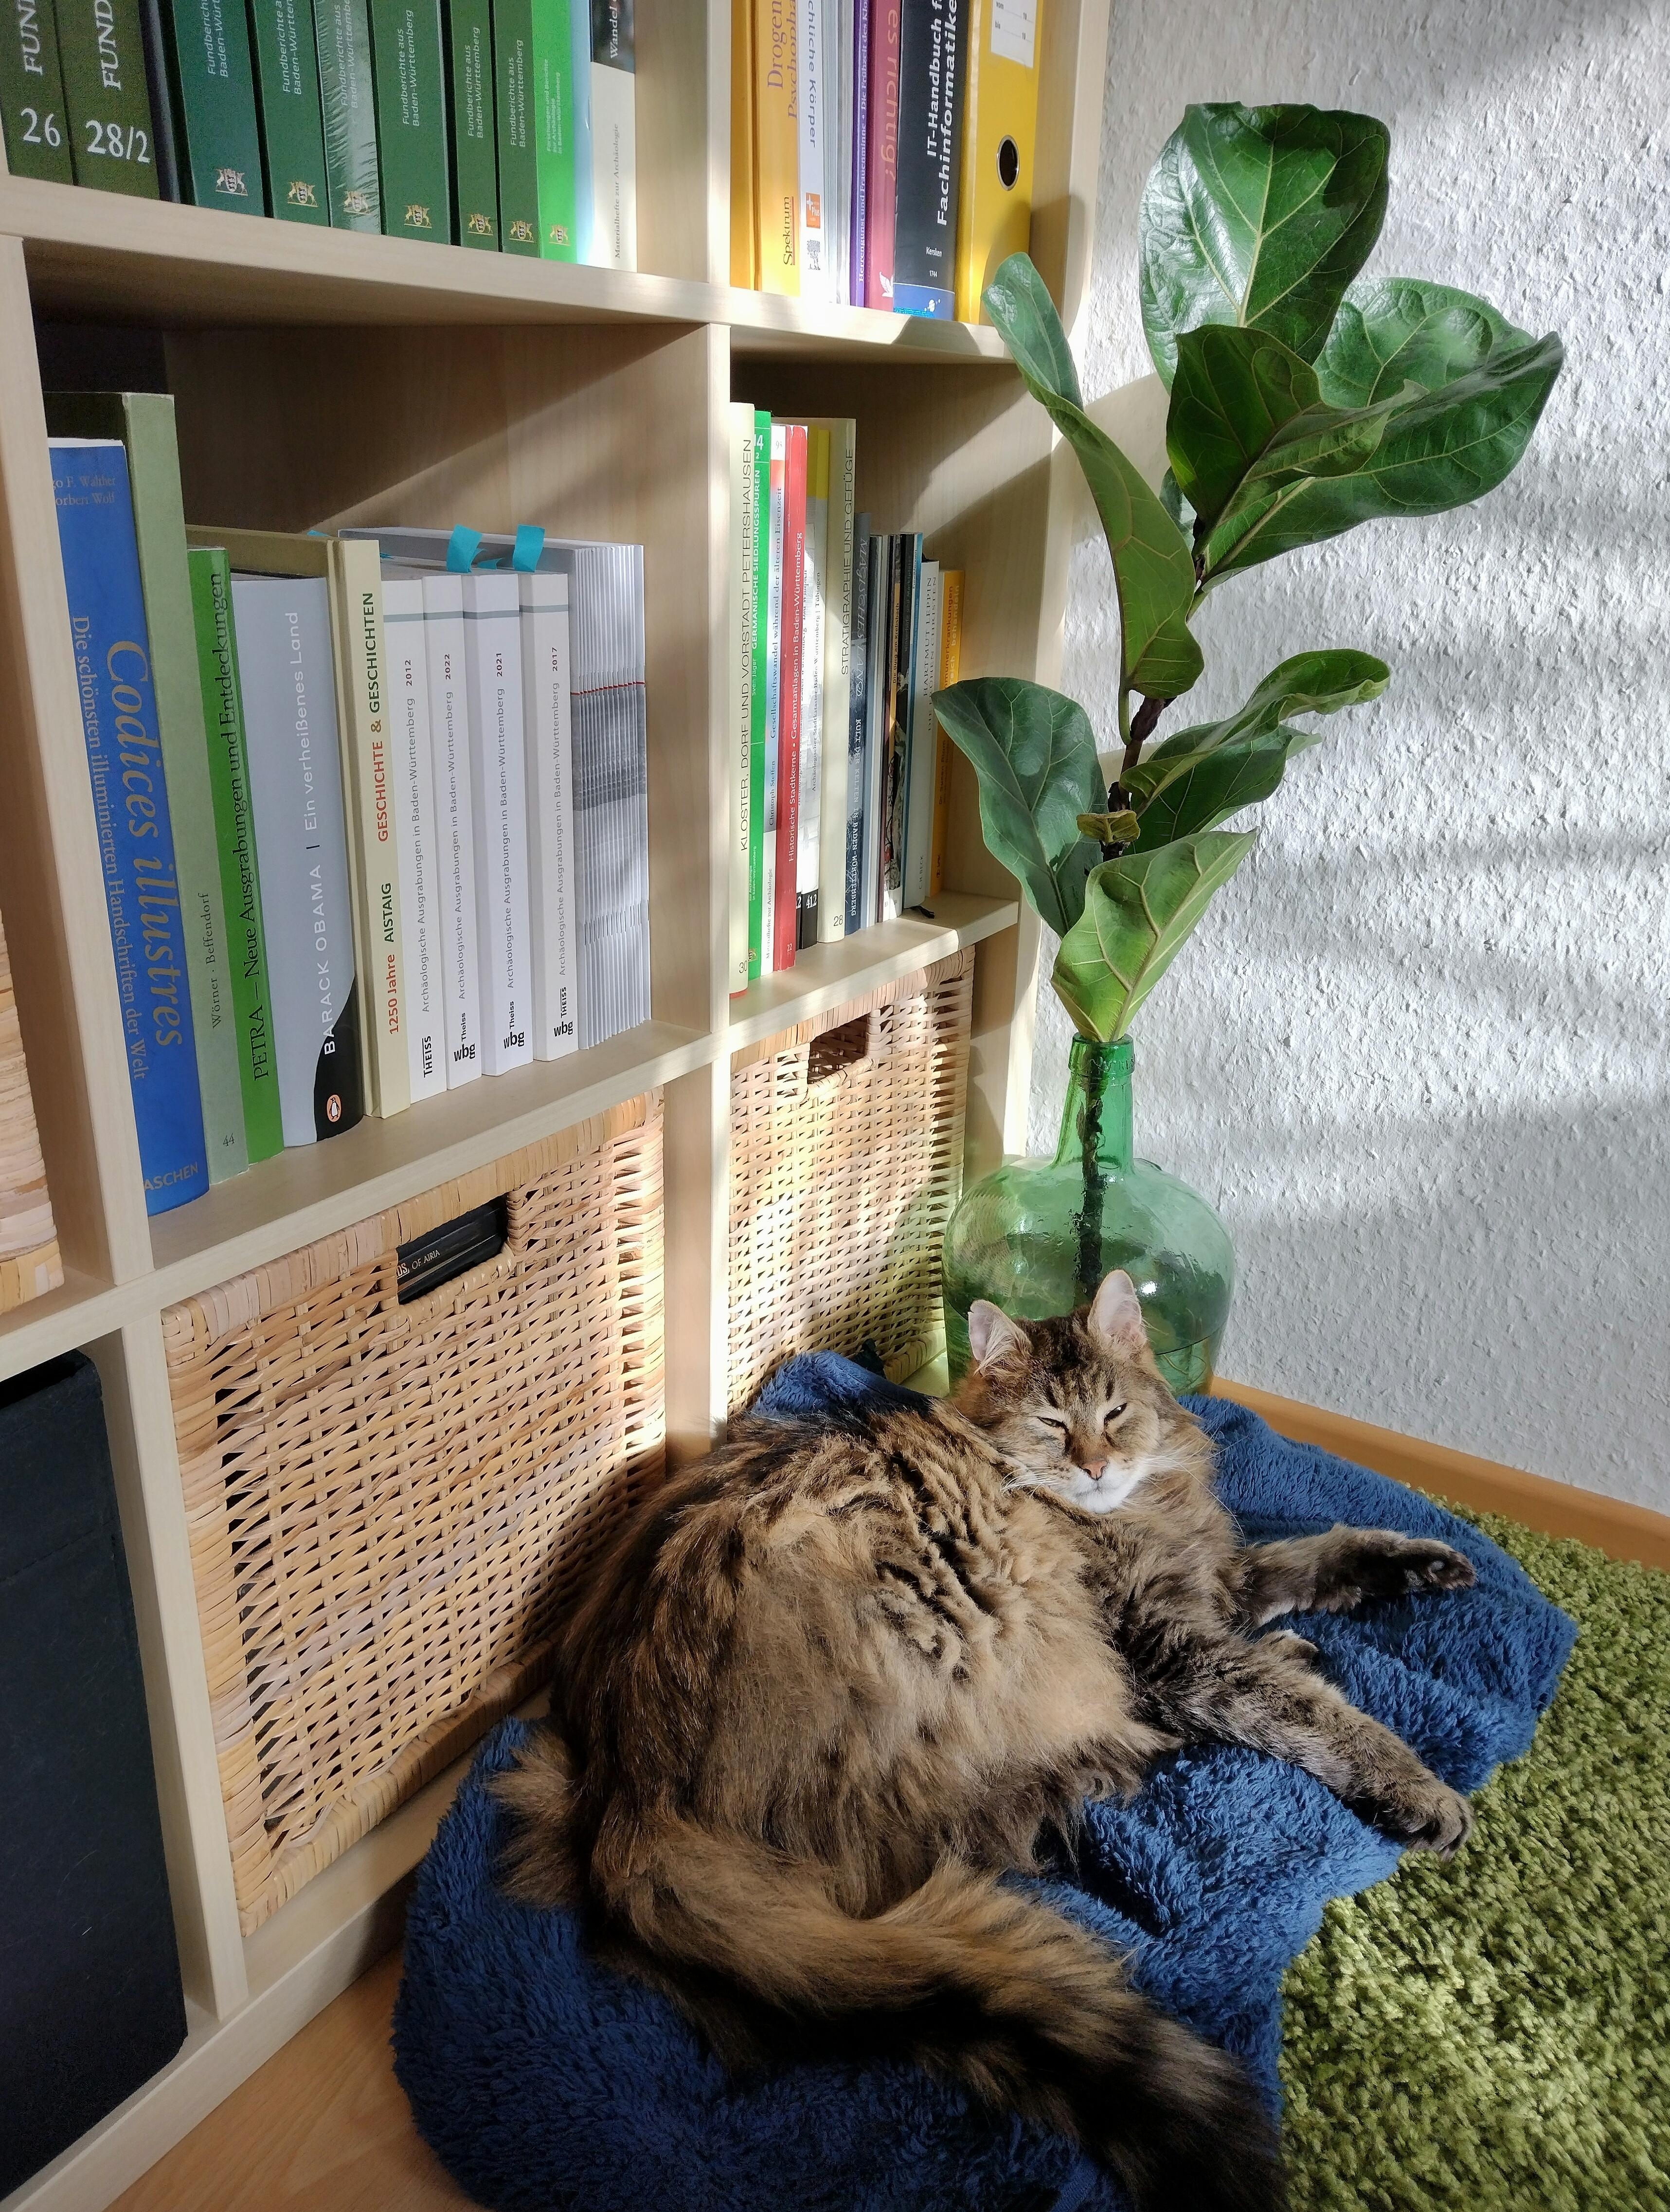 Katzenkind mit Pflanzenkind 🐈‍⬛💚
#katze #zimmerpflanze #wohnzimmer #bücherregal #bücher #farbenfroh #sonnenschein #korb